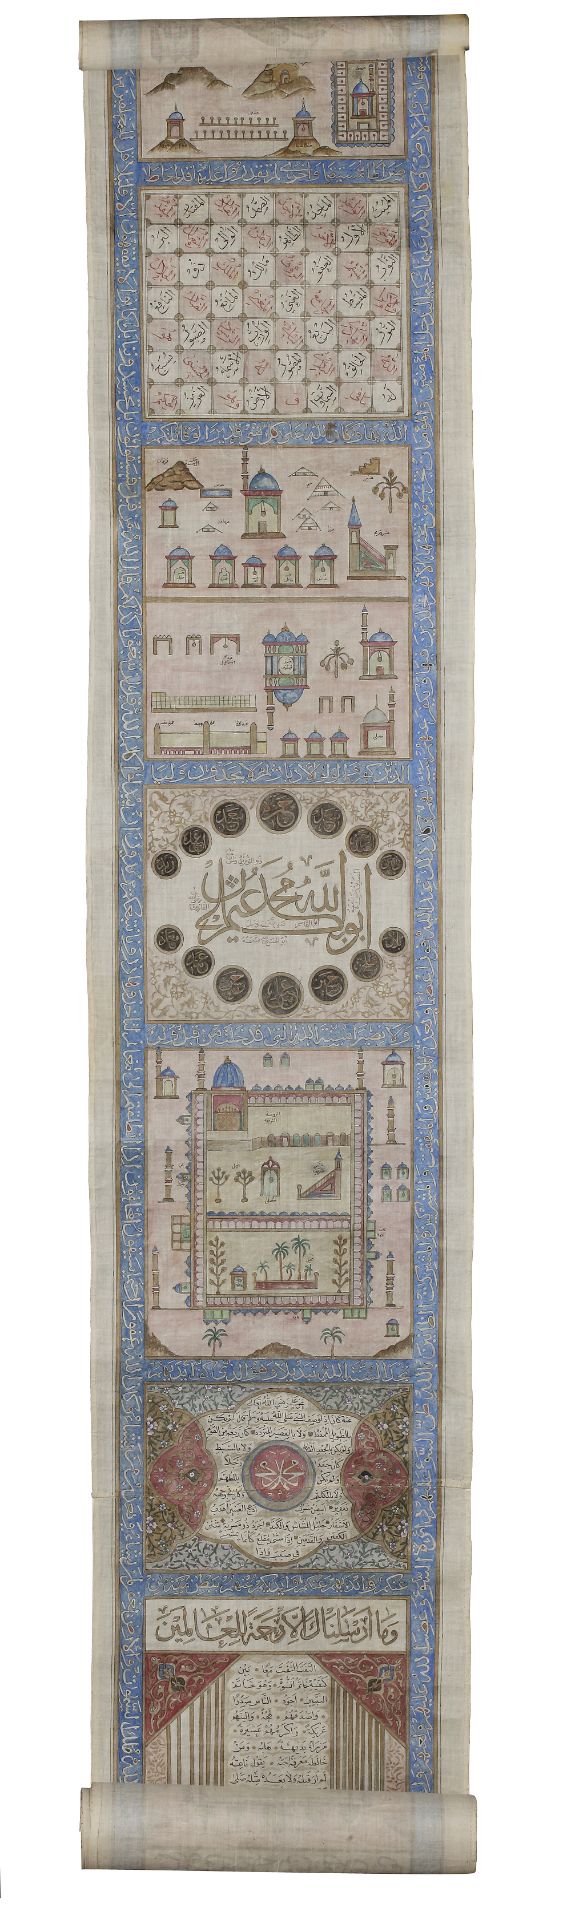 AN OTTOMAN ILLUMINATED HAJJ SCROLL, WRITTEN BY ABDUL-ALAH BIN HUSSAIN IN 1287 AH/1873 AD - Bild 6 aus 12